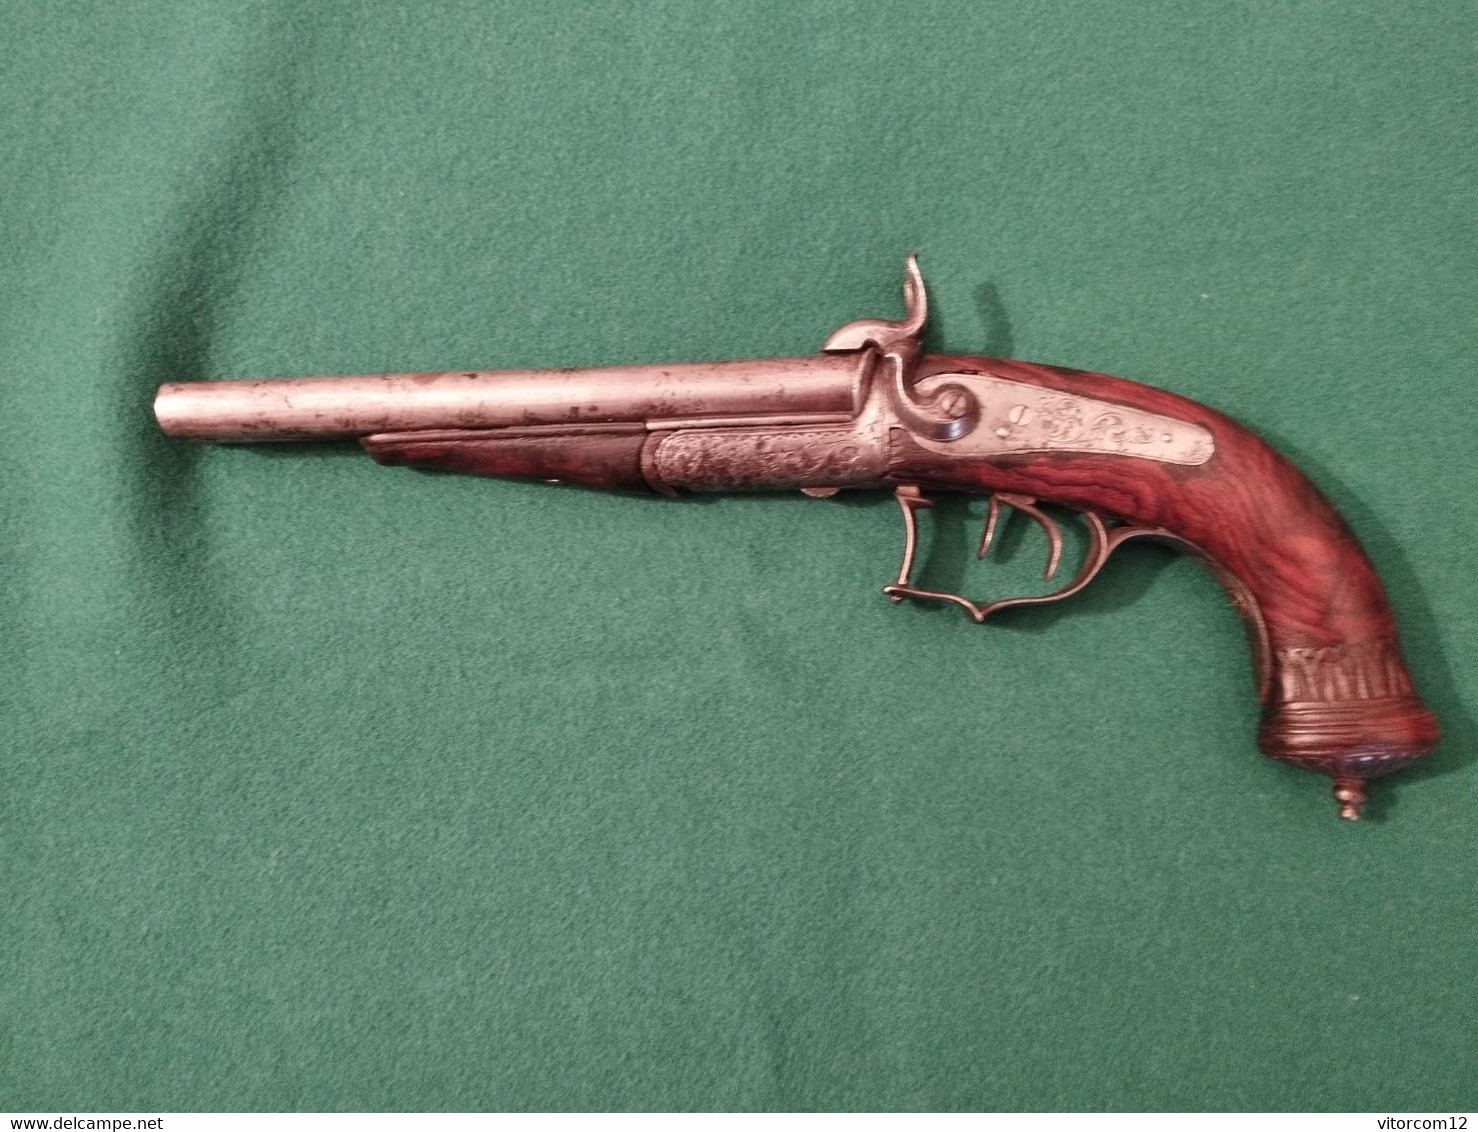 Pistolet Français de chasse Double Canon ( Justaposé) á broche type  Lefauchaux vers 1850.